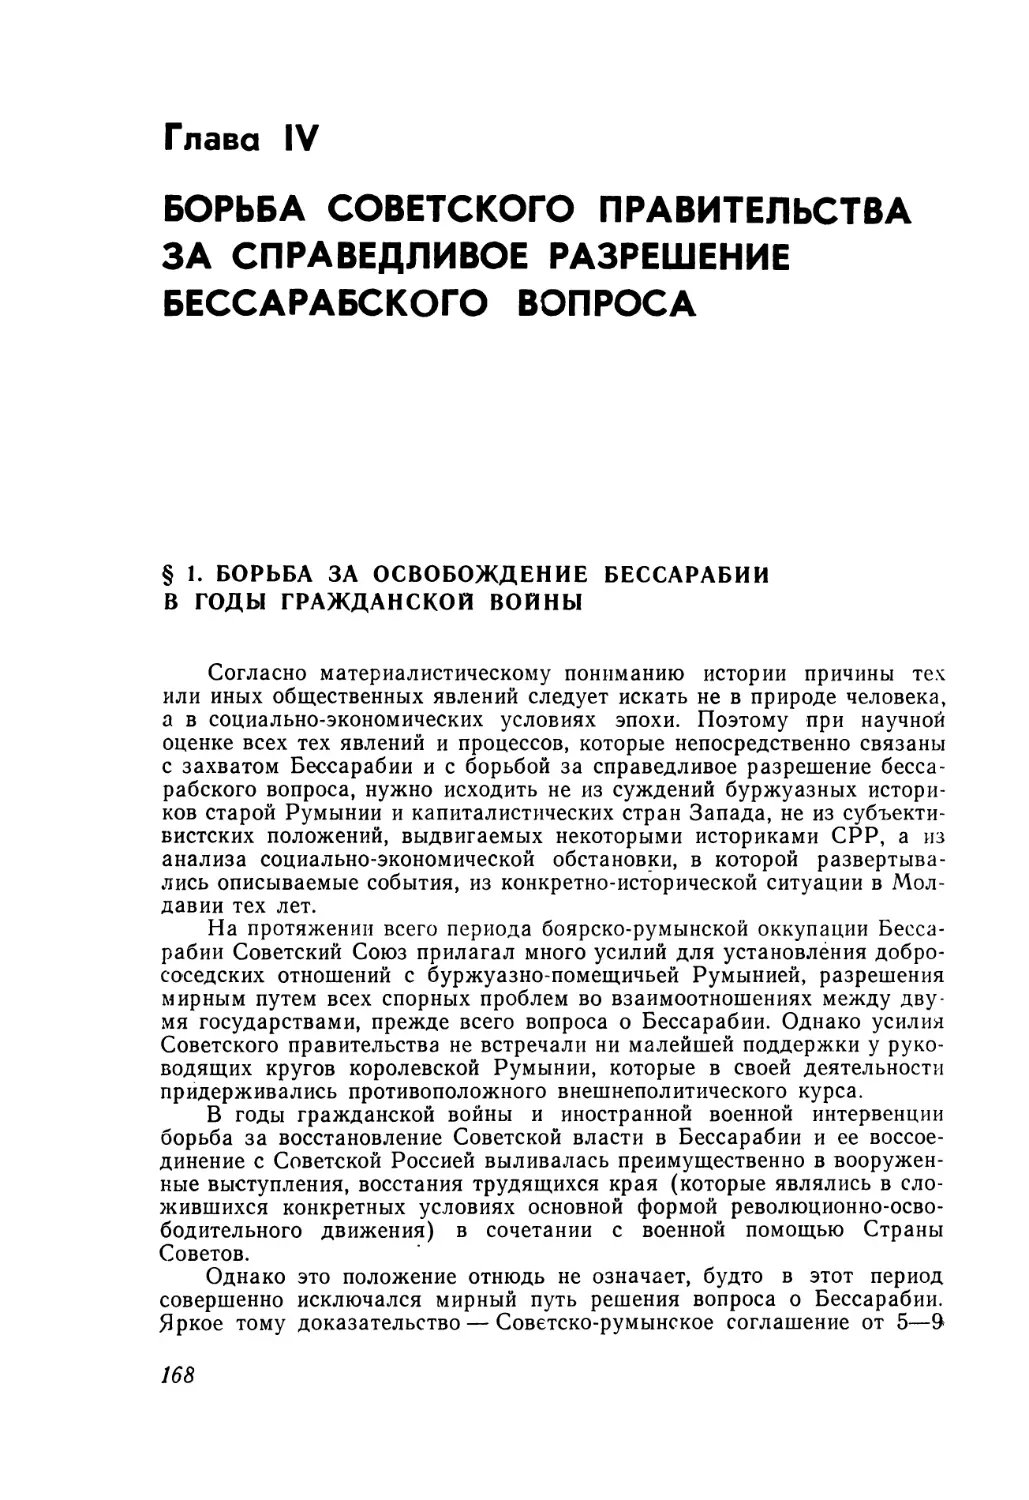 Глава IV. Борьба Советского правительства за справедливое разрешение бессарабского вопроса